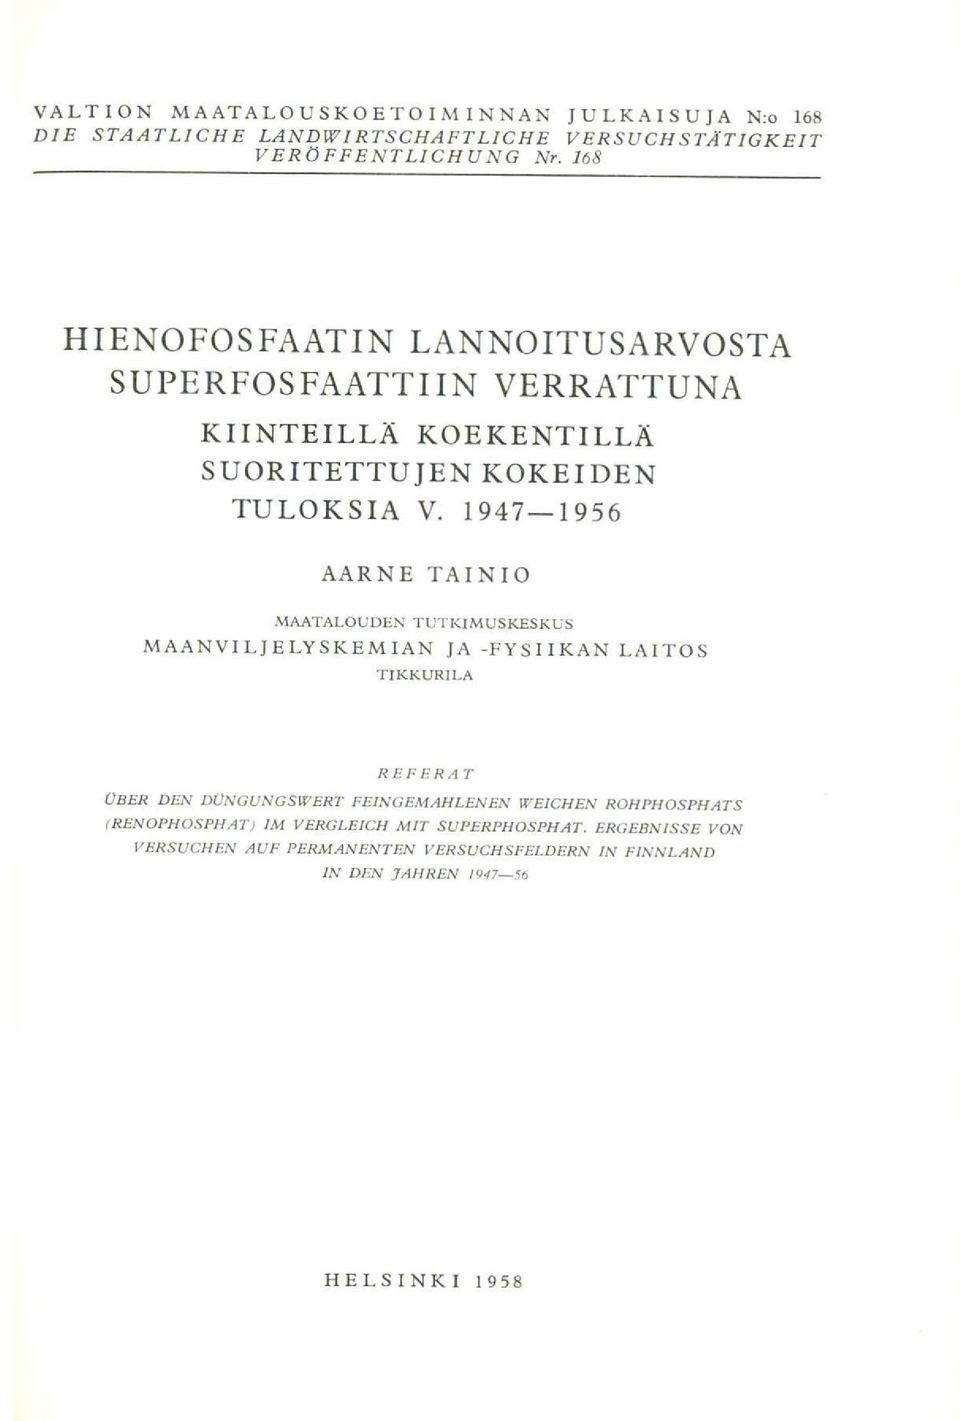 1947-1956 AARNE TAINIO MAATALOUDEN TUTKIMUSKESKUS MAANVILJELYSKEMIAN JA -FYSIIKAN LAITOS TIKKURILA REFERAT OBER DEN DONGUNGSWERT